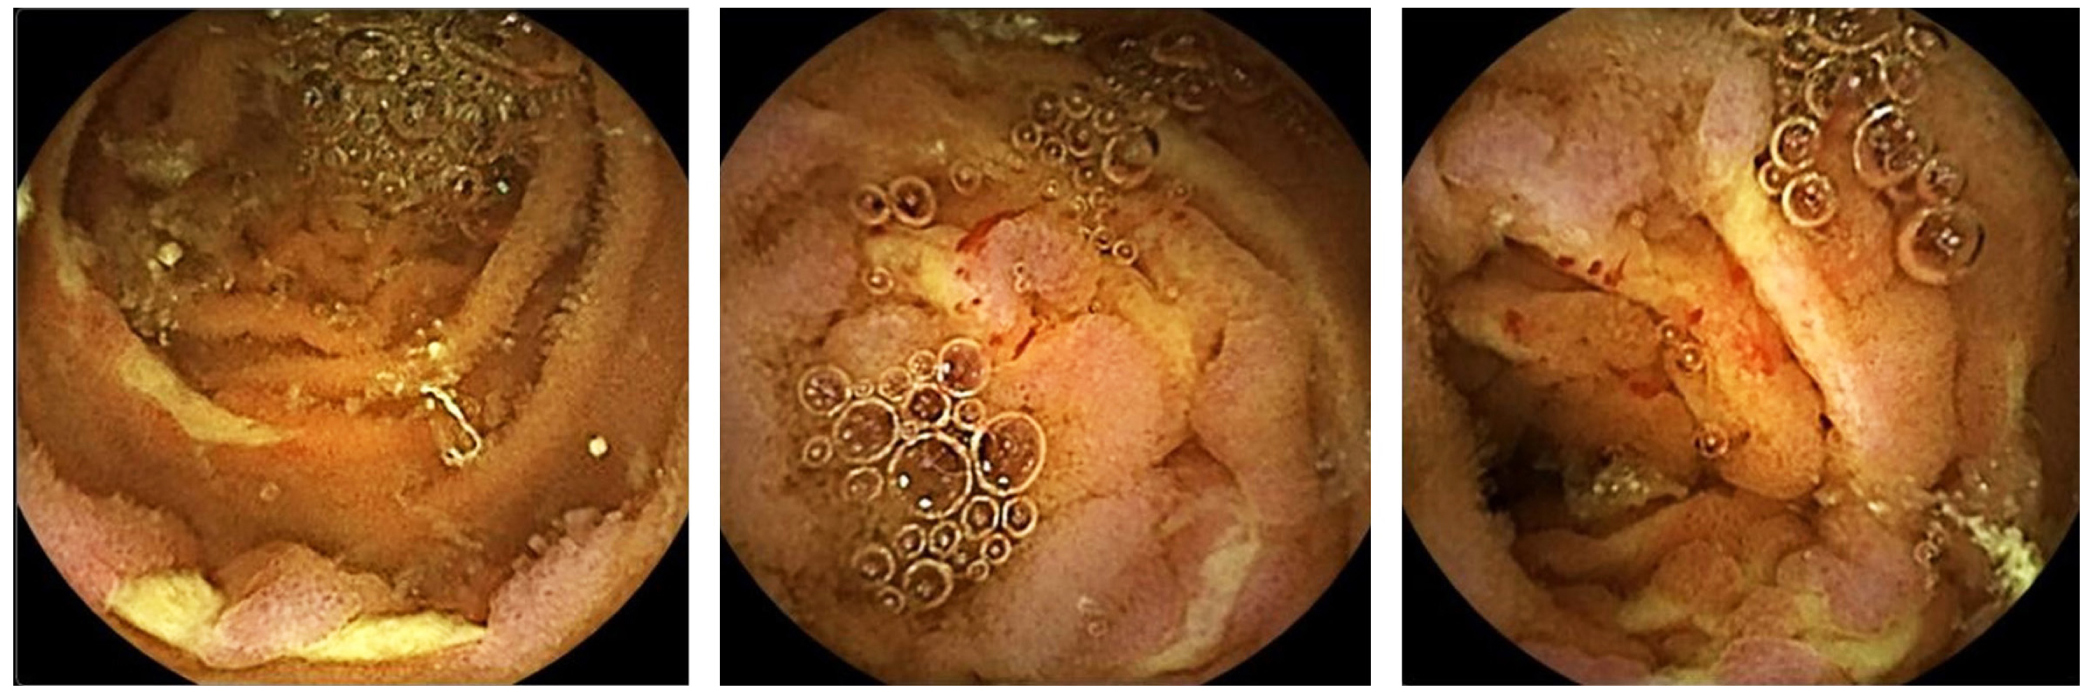 Figura 1. Se observan múltiples úlceras profundas, recubiertas por fibrina, con compromiso circunferencial y con focos de sangrado activo escaso. Mucosa con congestión y edema grave, sin signos de necrosis.